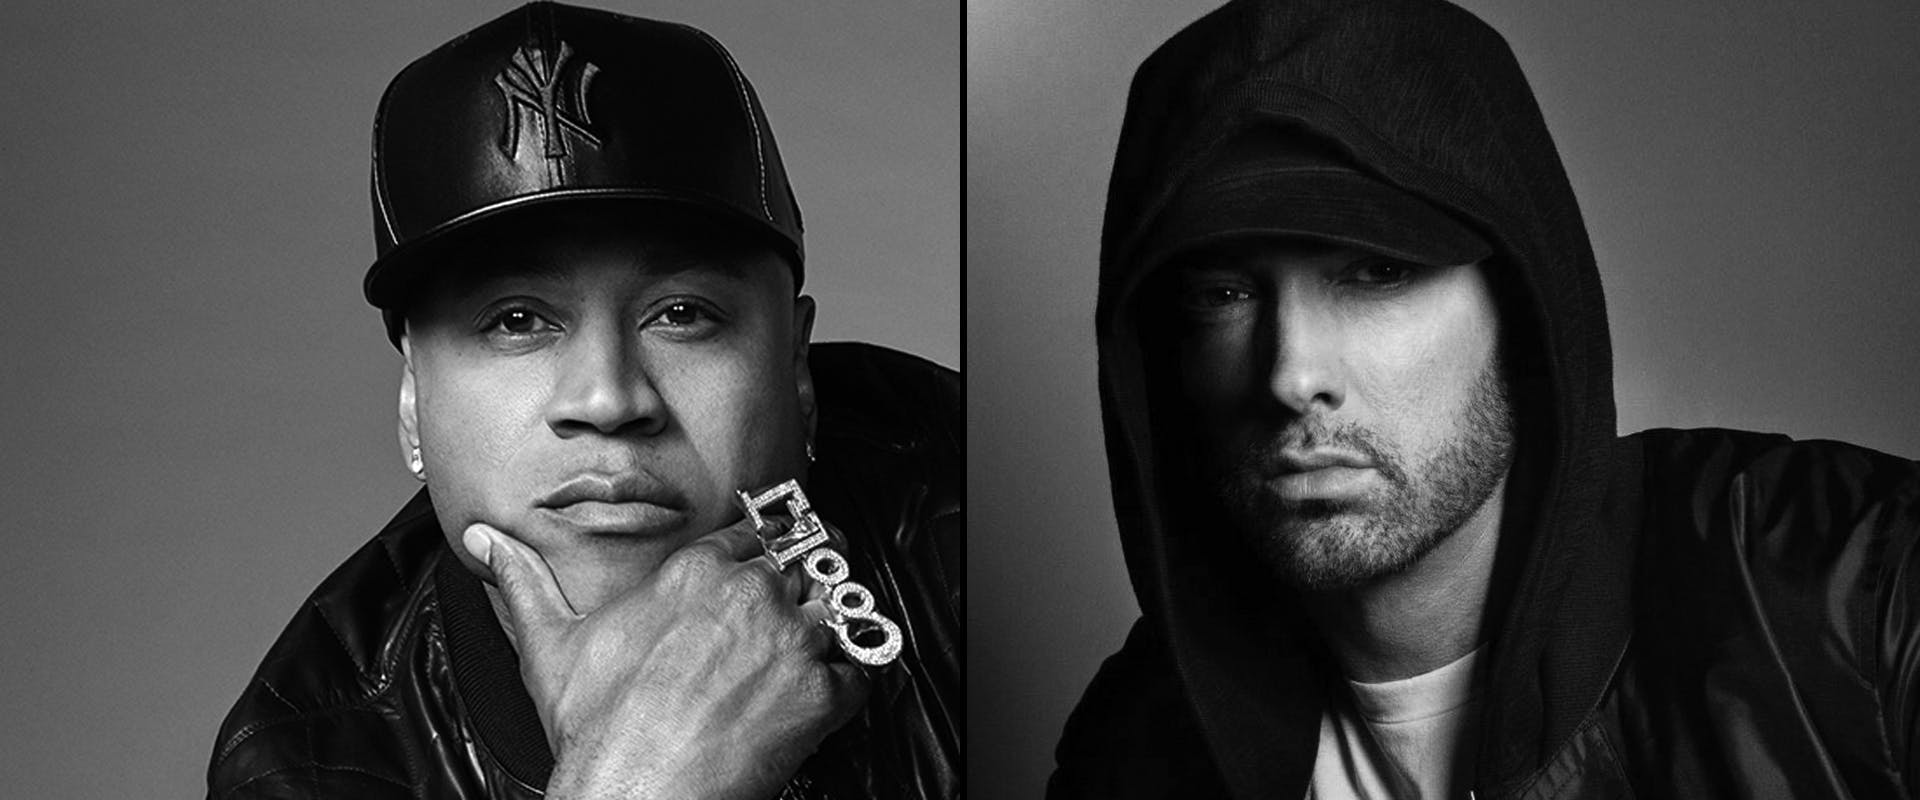 LL COOL J and Eminem